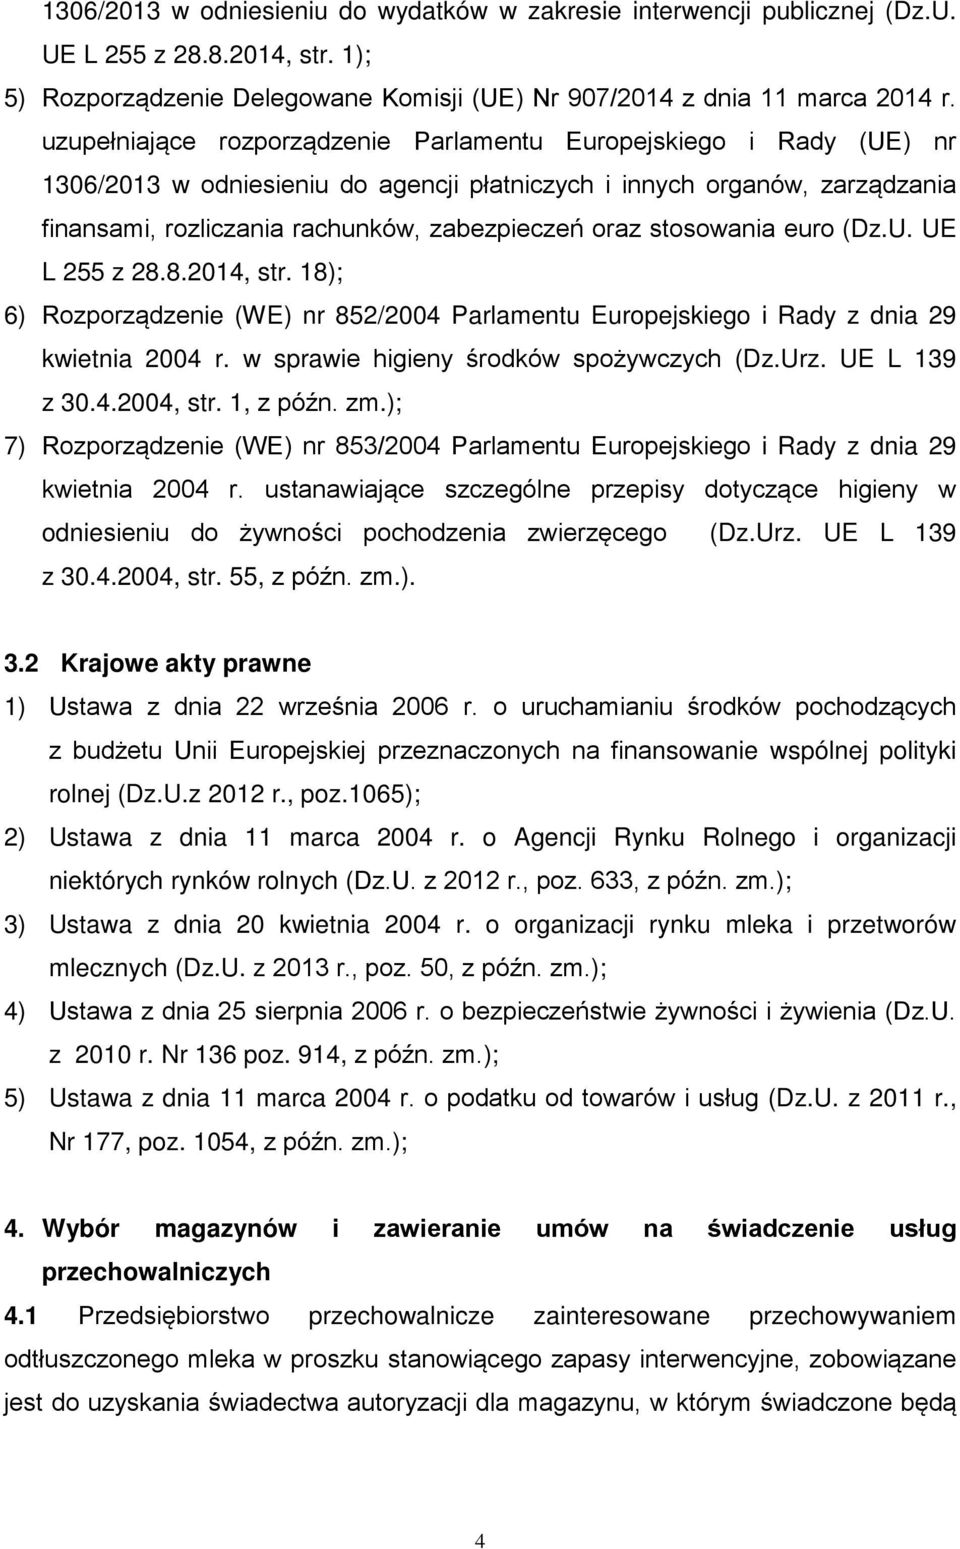 stosowania euro (Dz.U. UE L 255 z 28.8.2014, str. 18); 6) Rozporządzenie (WE) nr 852/2004 Parlamentu Europejskiego i Rady z dnia 29 kwietnia 2004 r. w sprawie higieny środków spożywczych (Dz.Urz.